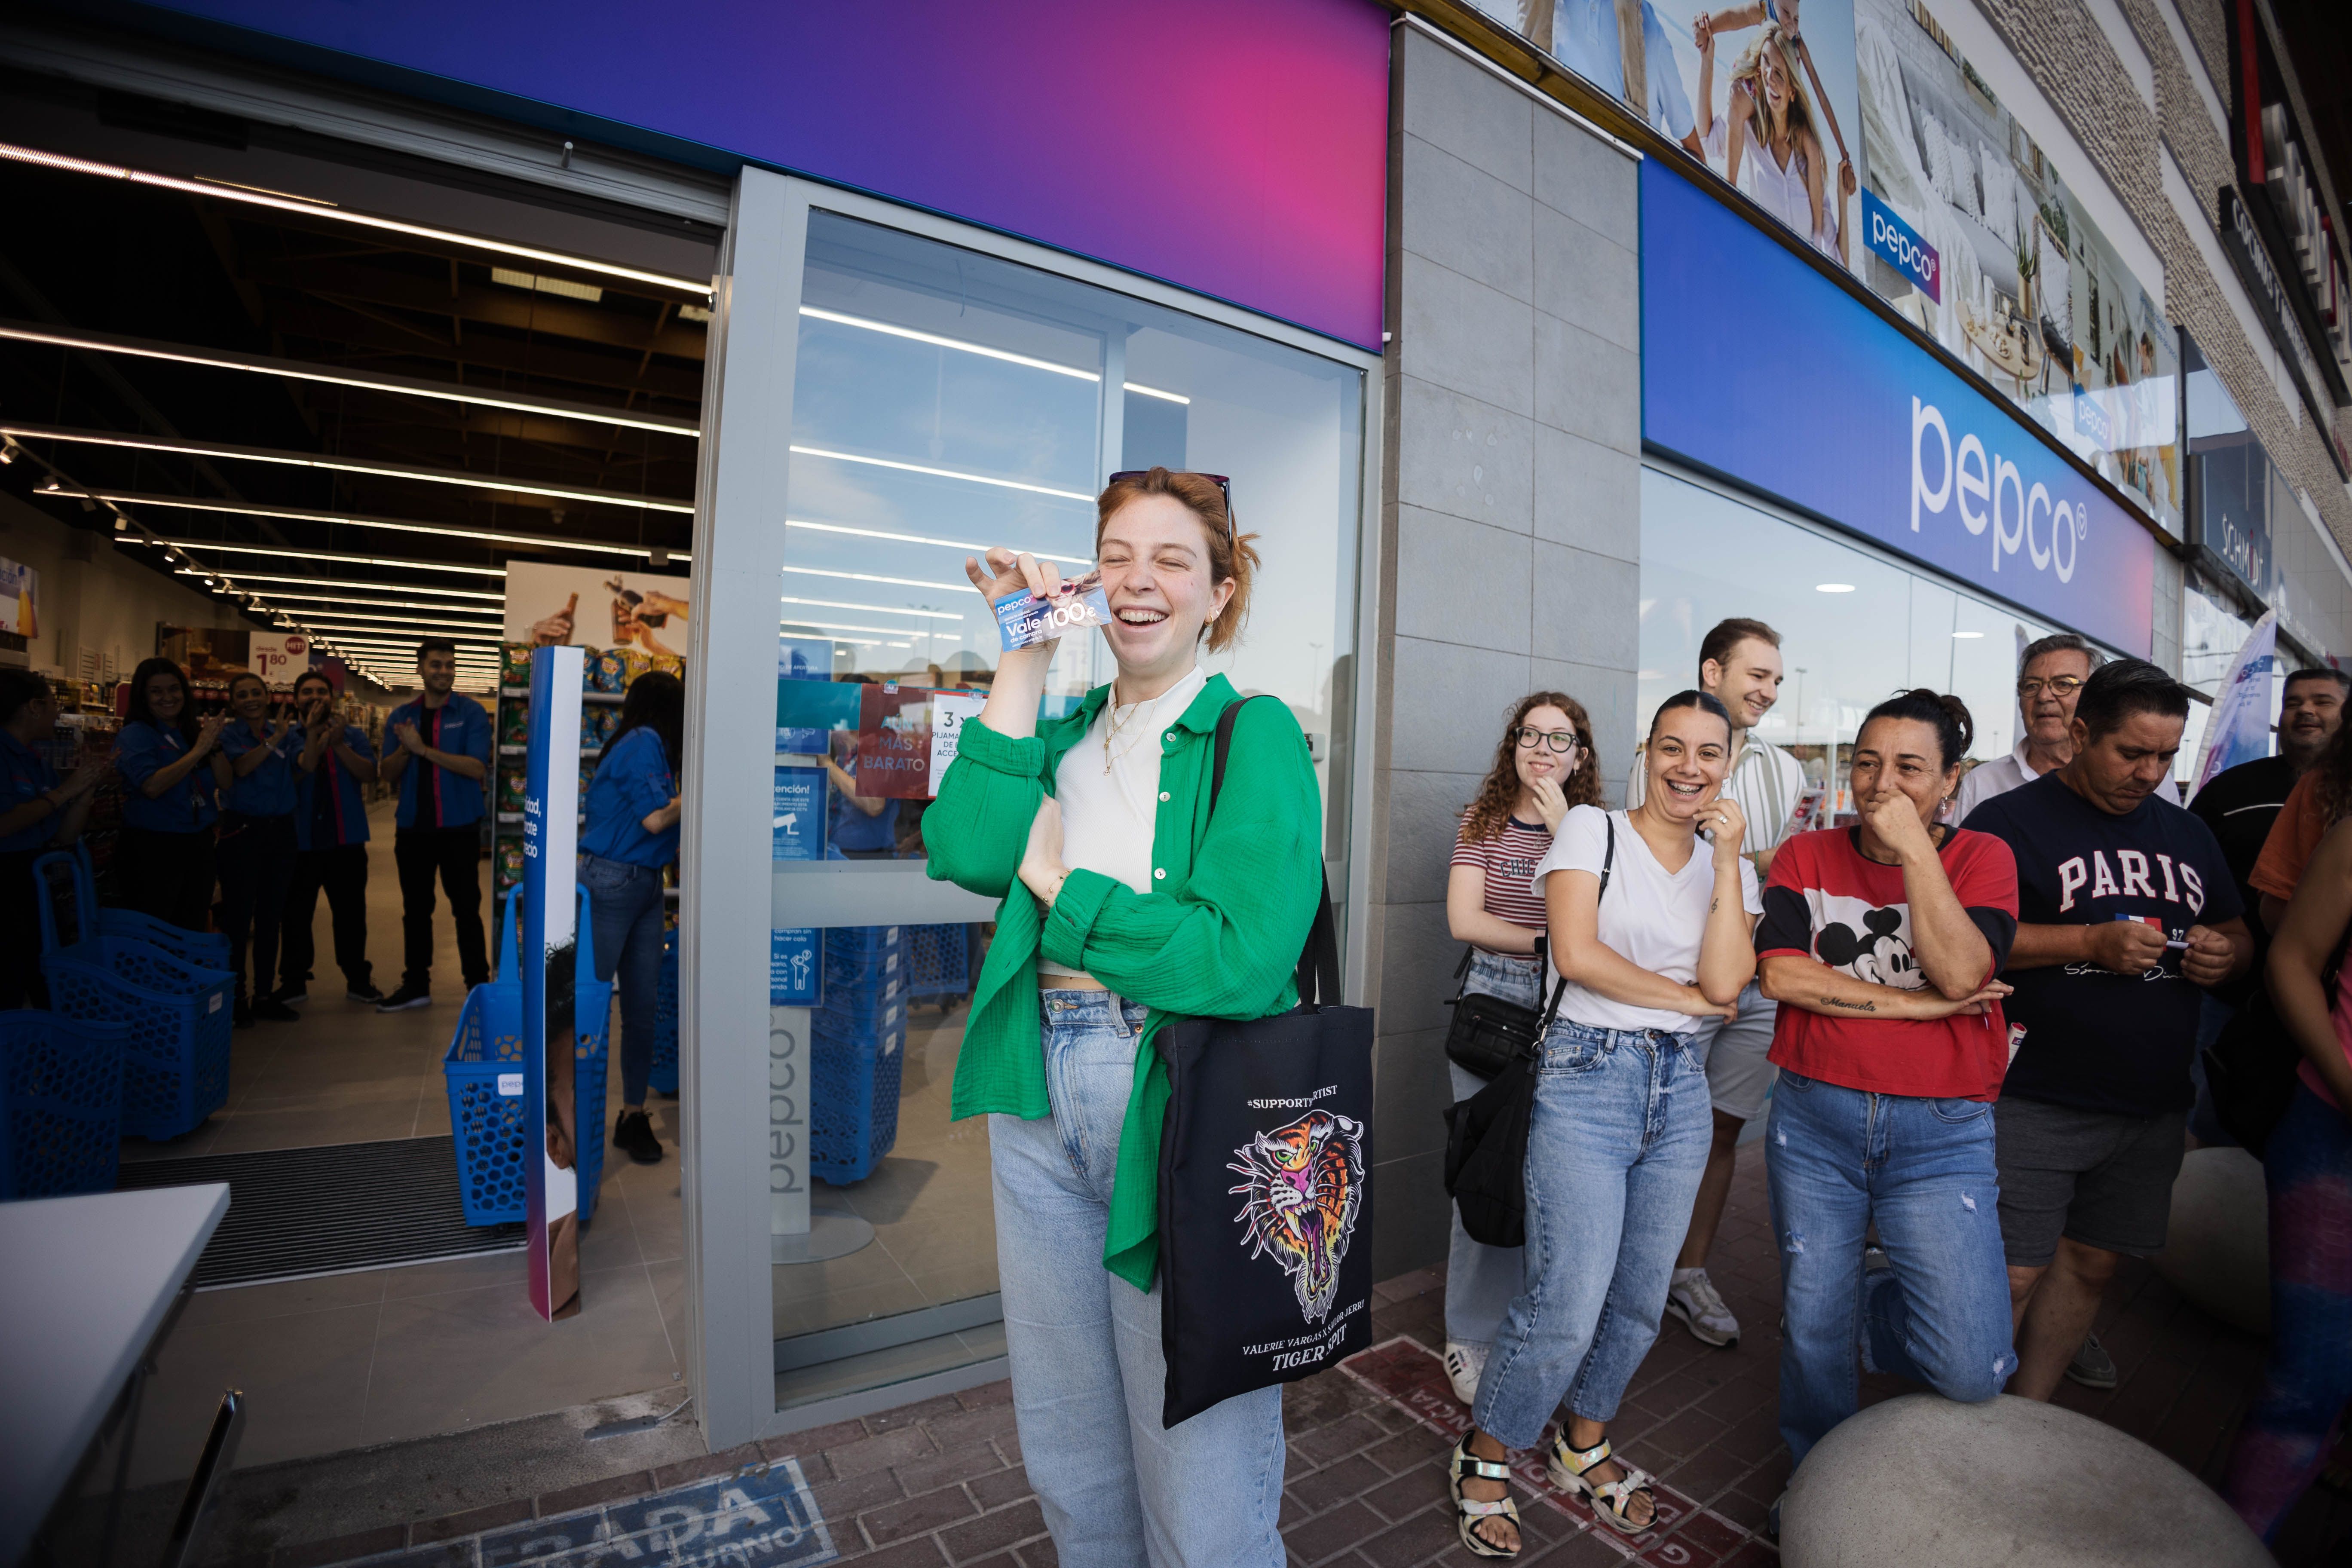 La apertura de Pepco en Luz Shopping de Jerez atrajo a decenas de personas que guardaron cola.